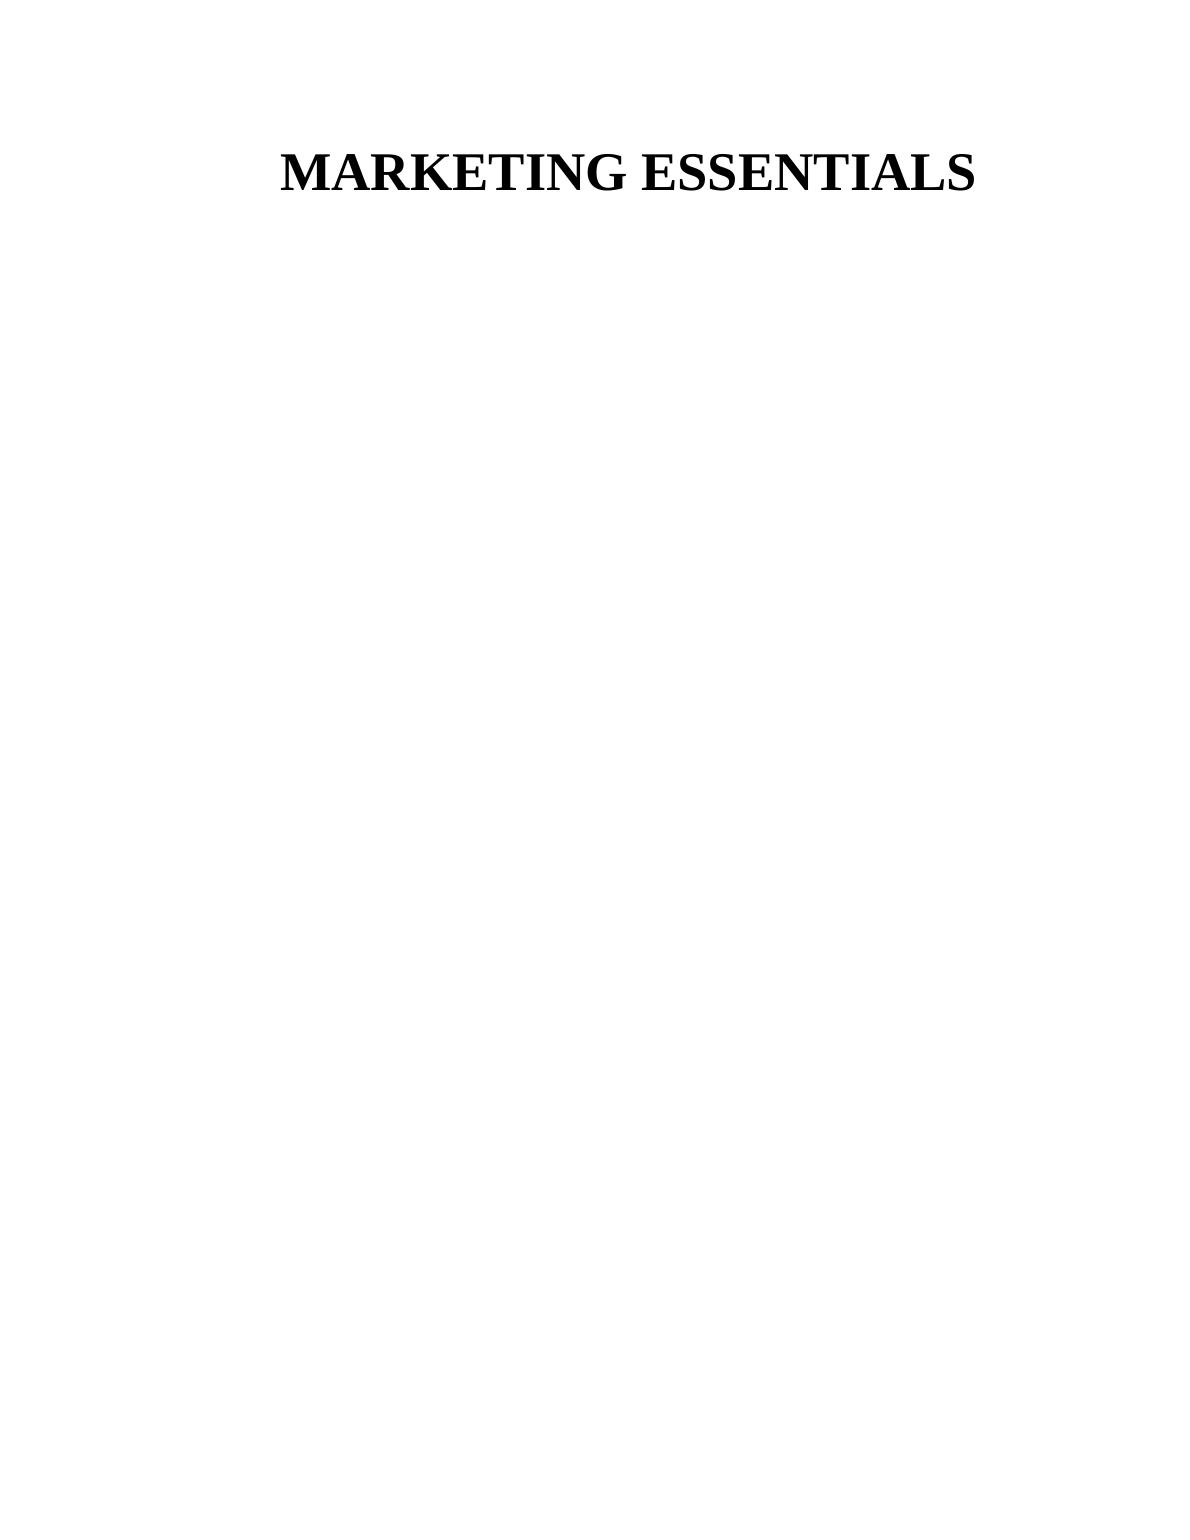 Marketing Essentials Assignment : McDonald company_1